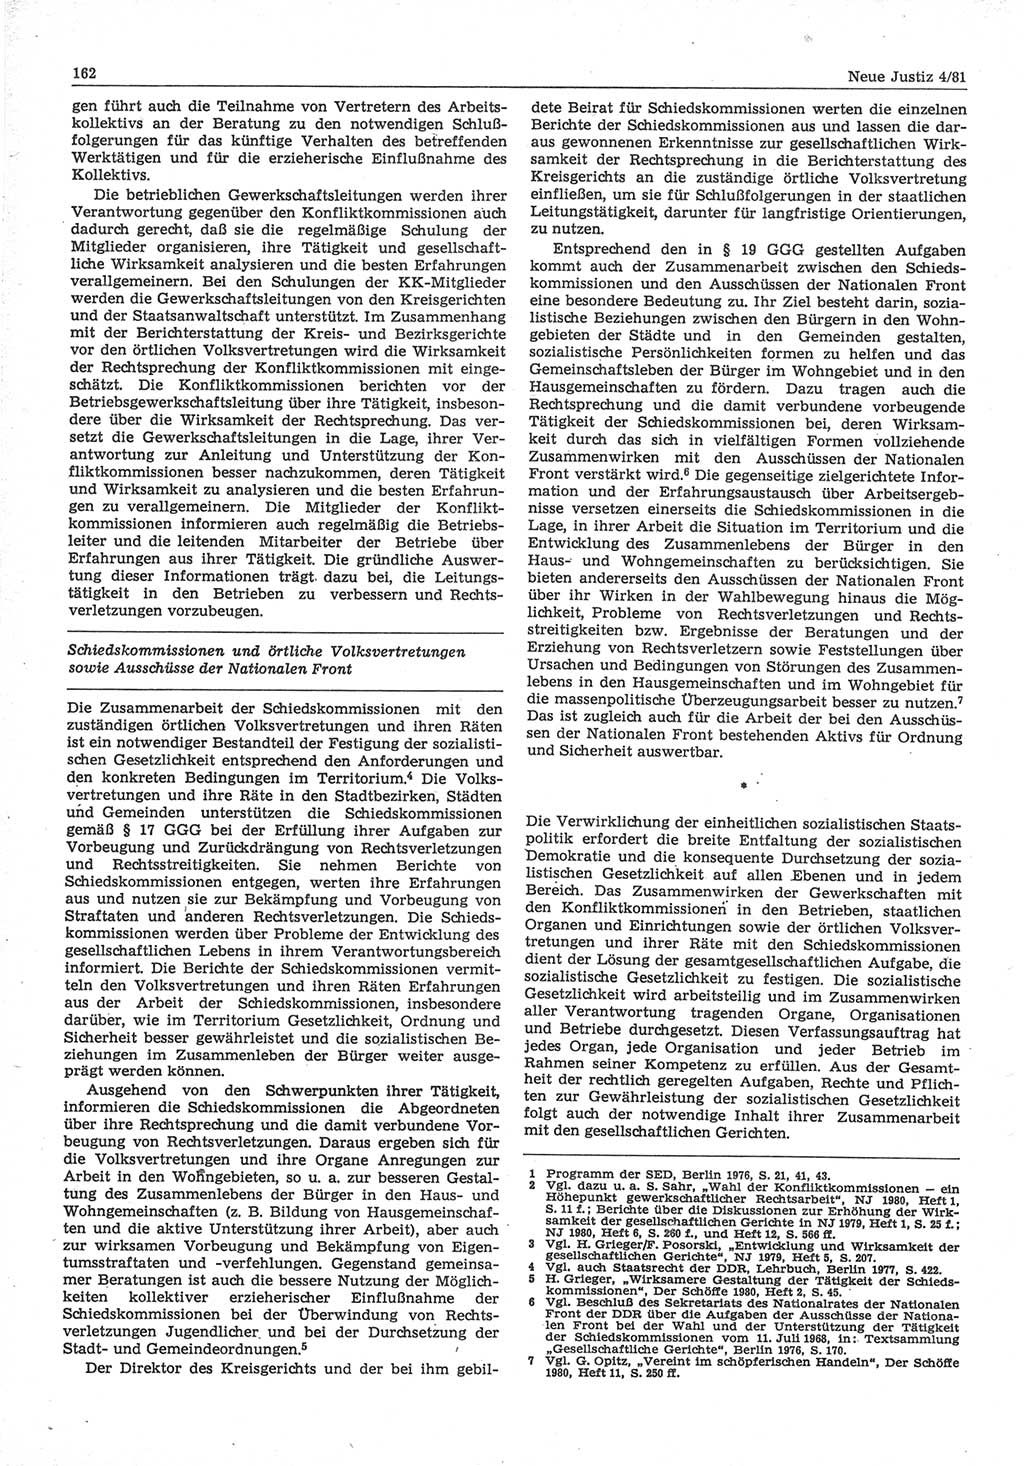 Neue Justiz (NJ), Zeitschrift für sozialistisches Recht und Gesetzlichkeit [Deutsche Demokratische Republik (DDR)], 35. Jahrgang 1981, Seite 162 (NJ DDR 1981, S. 162)